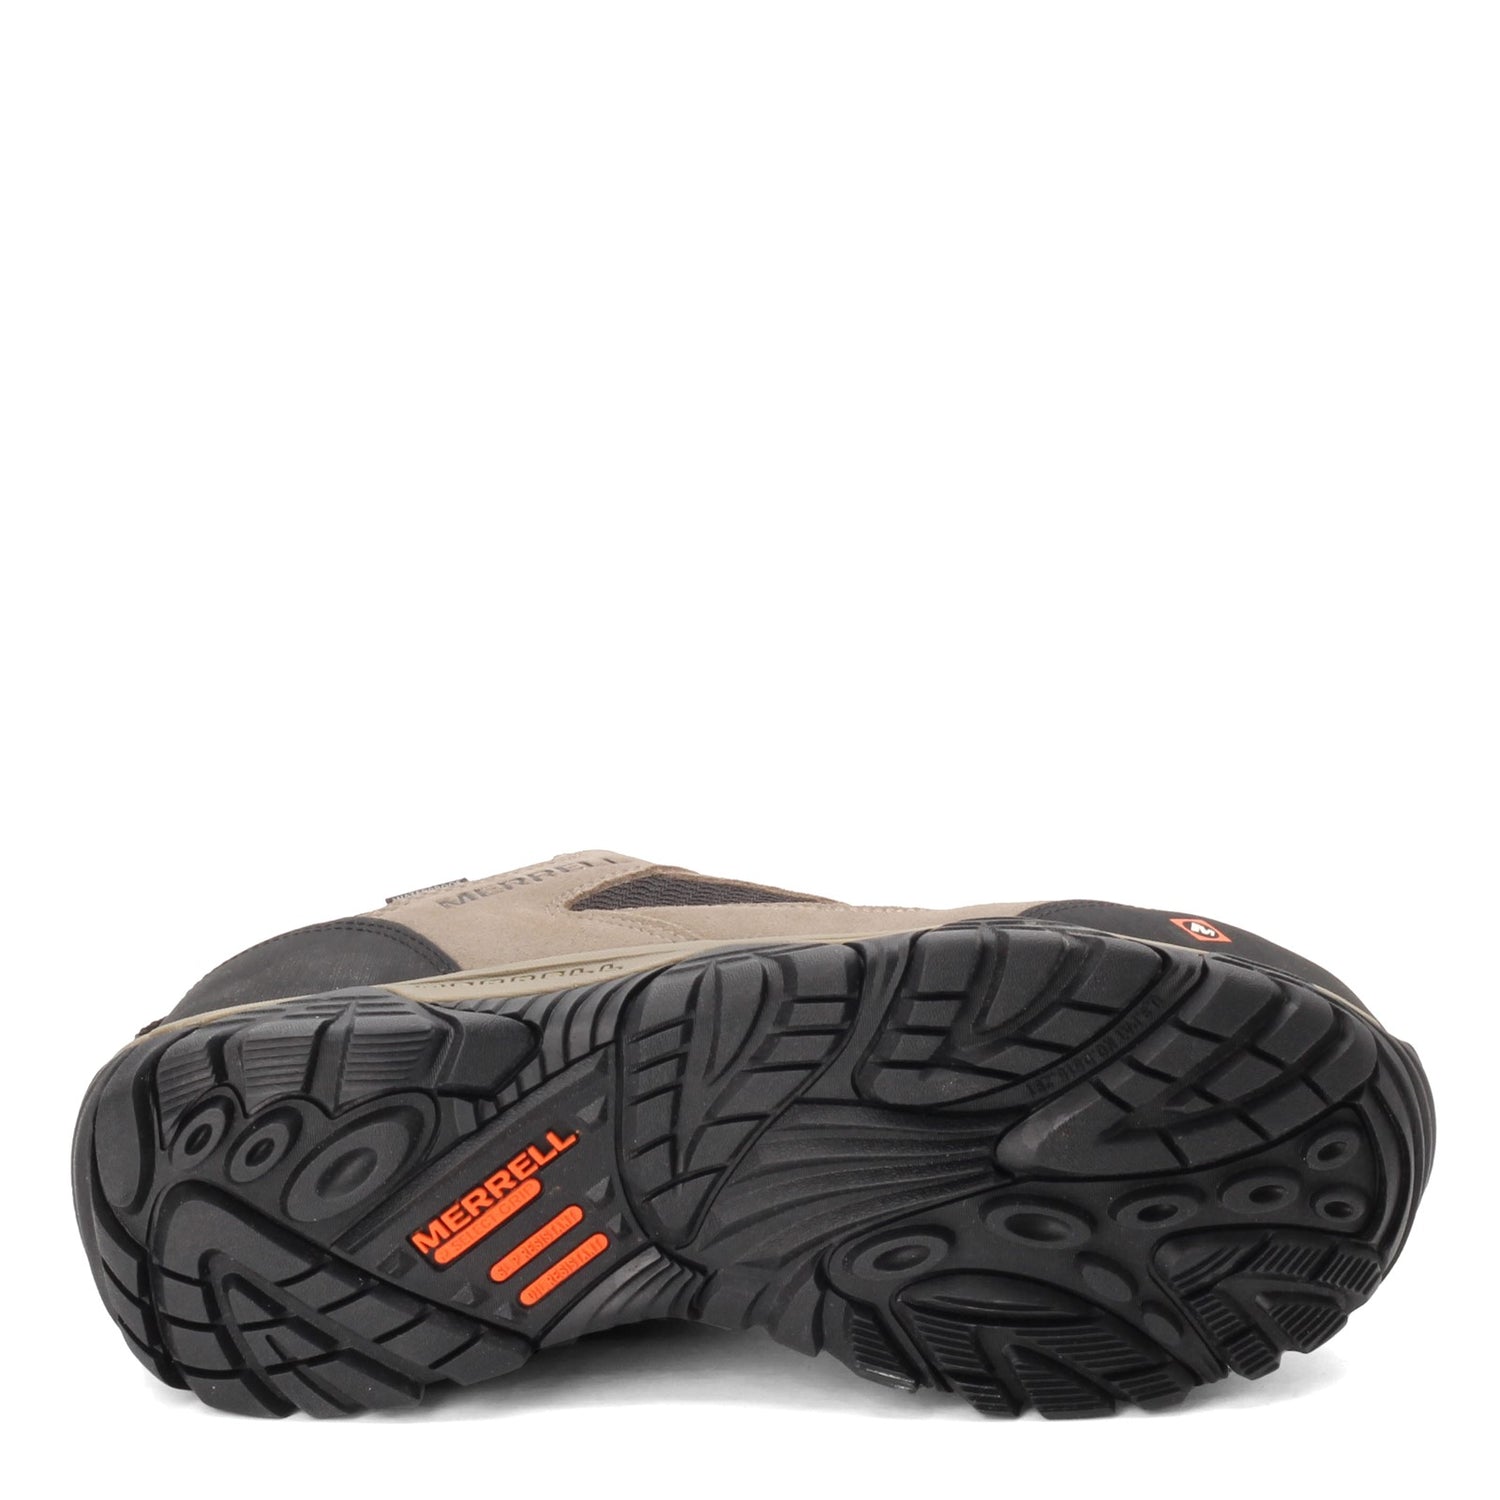 Peltz Shoes  Men's Merrell Moab Onset Low Waterproof Comp Toe Work Shoe WALNUT J099505